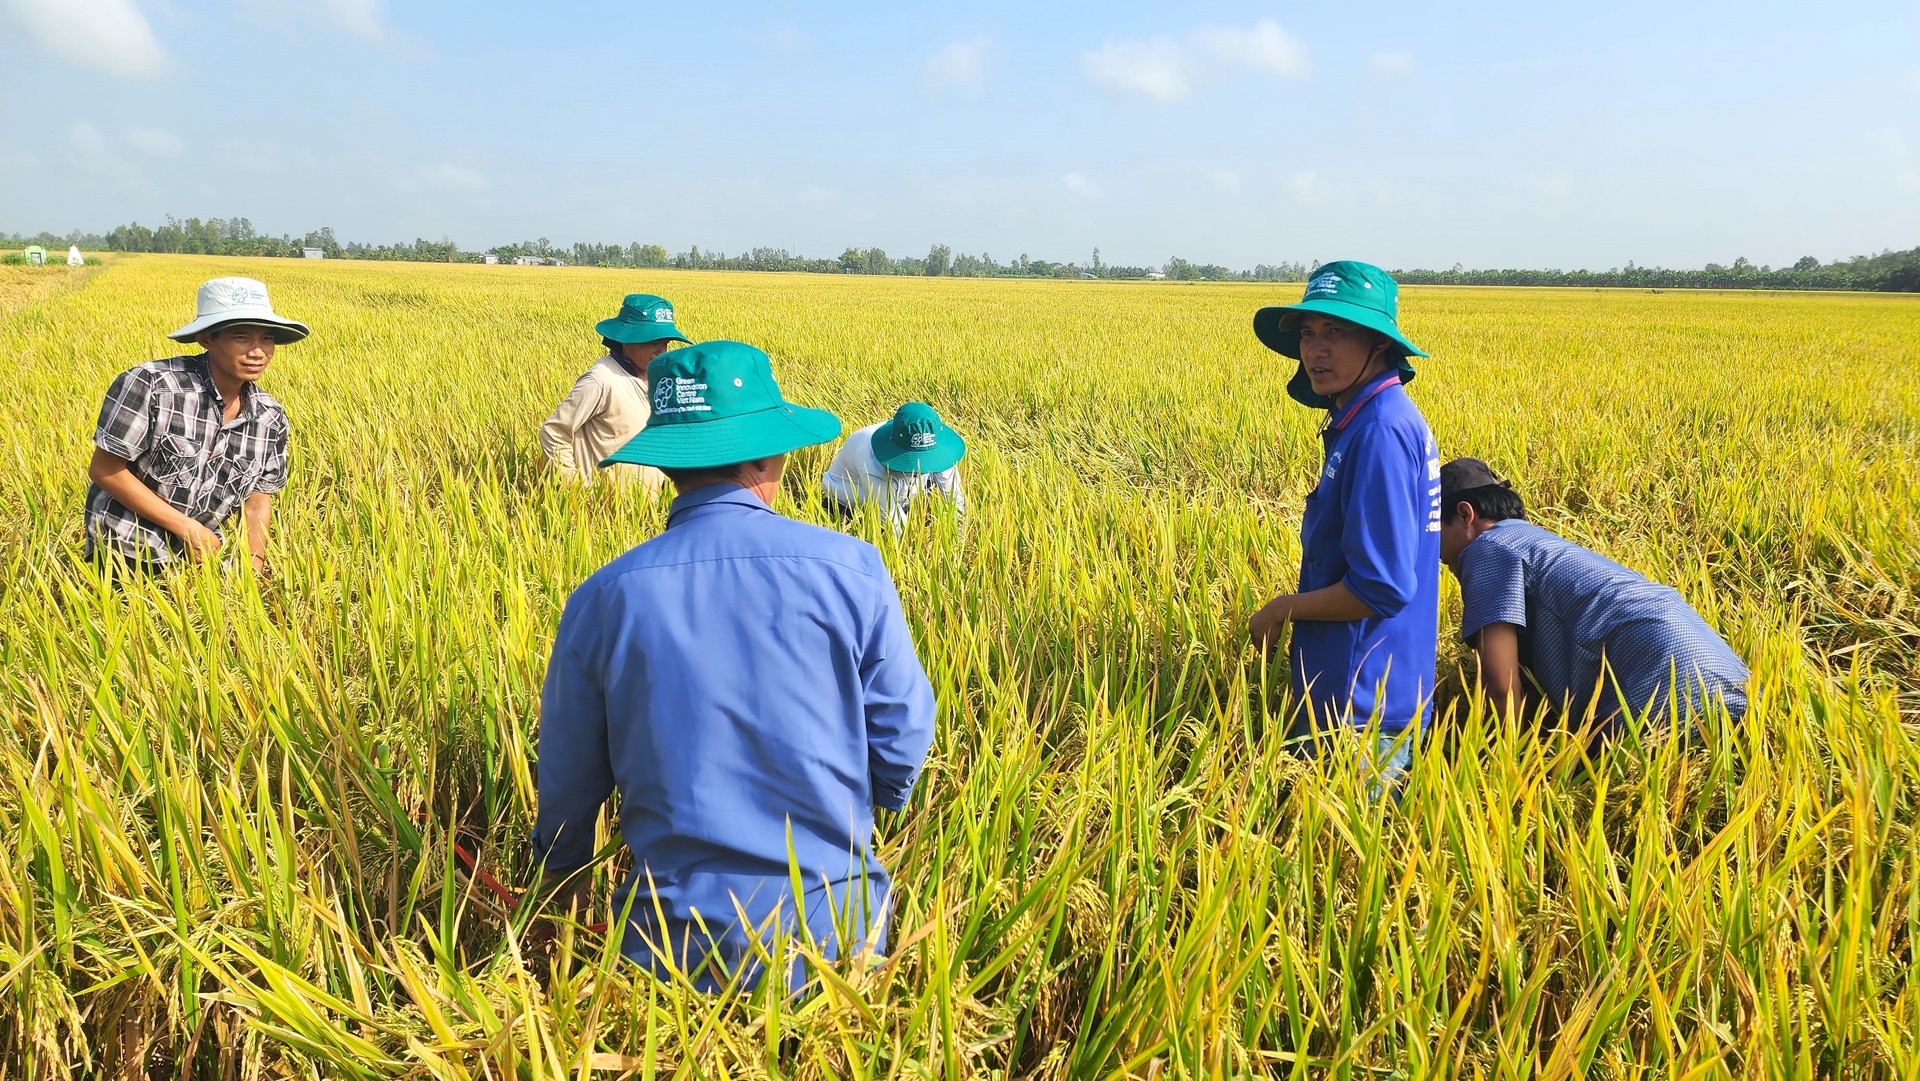 Ít nhất 1 triệu nông dân trồng lúa ở ĐBSCL được hưởng lợi trực tiếp từ Đề án 1 triệu ha lúa chất lượng cao gắn với tăng trưởng xanh. Ảnh: Kim Anh.